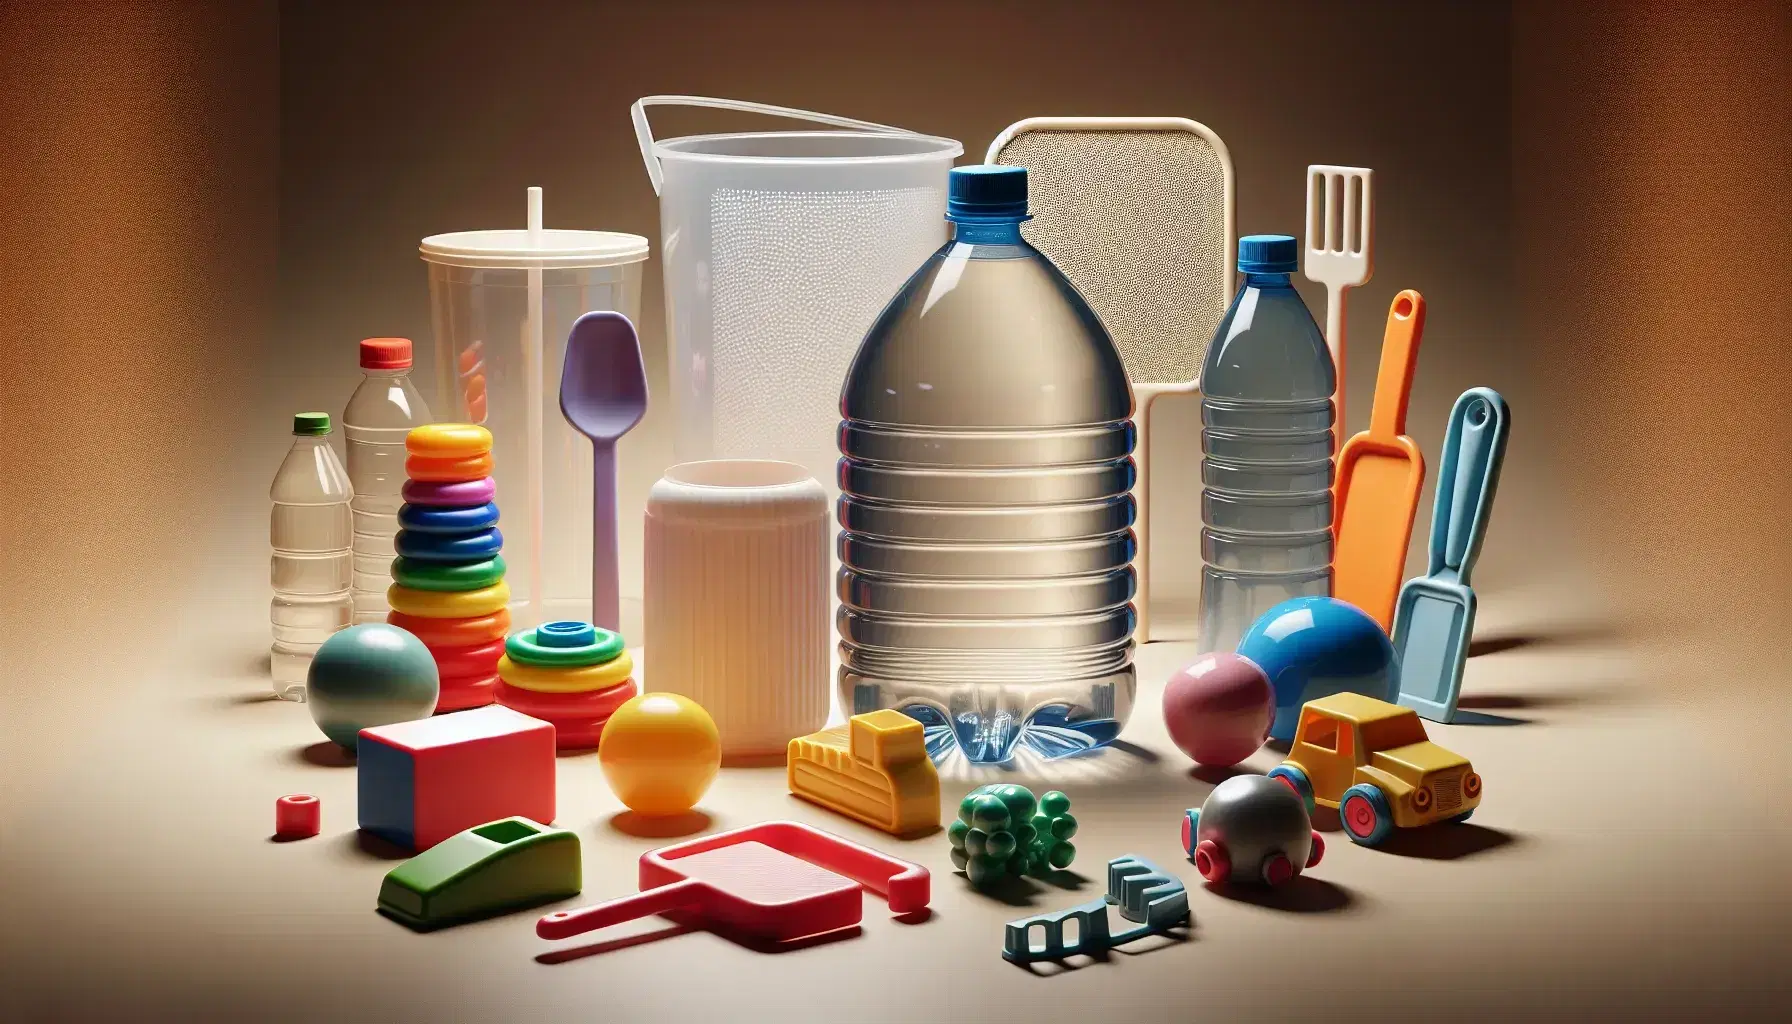 Colección variada de objetos de plástico con juguetes, utensilios de cocina y envases en tonos vivos sobre superficie neutra.